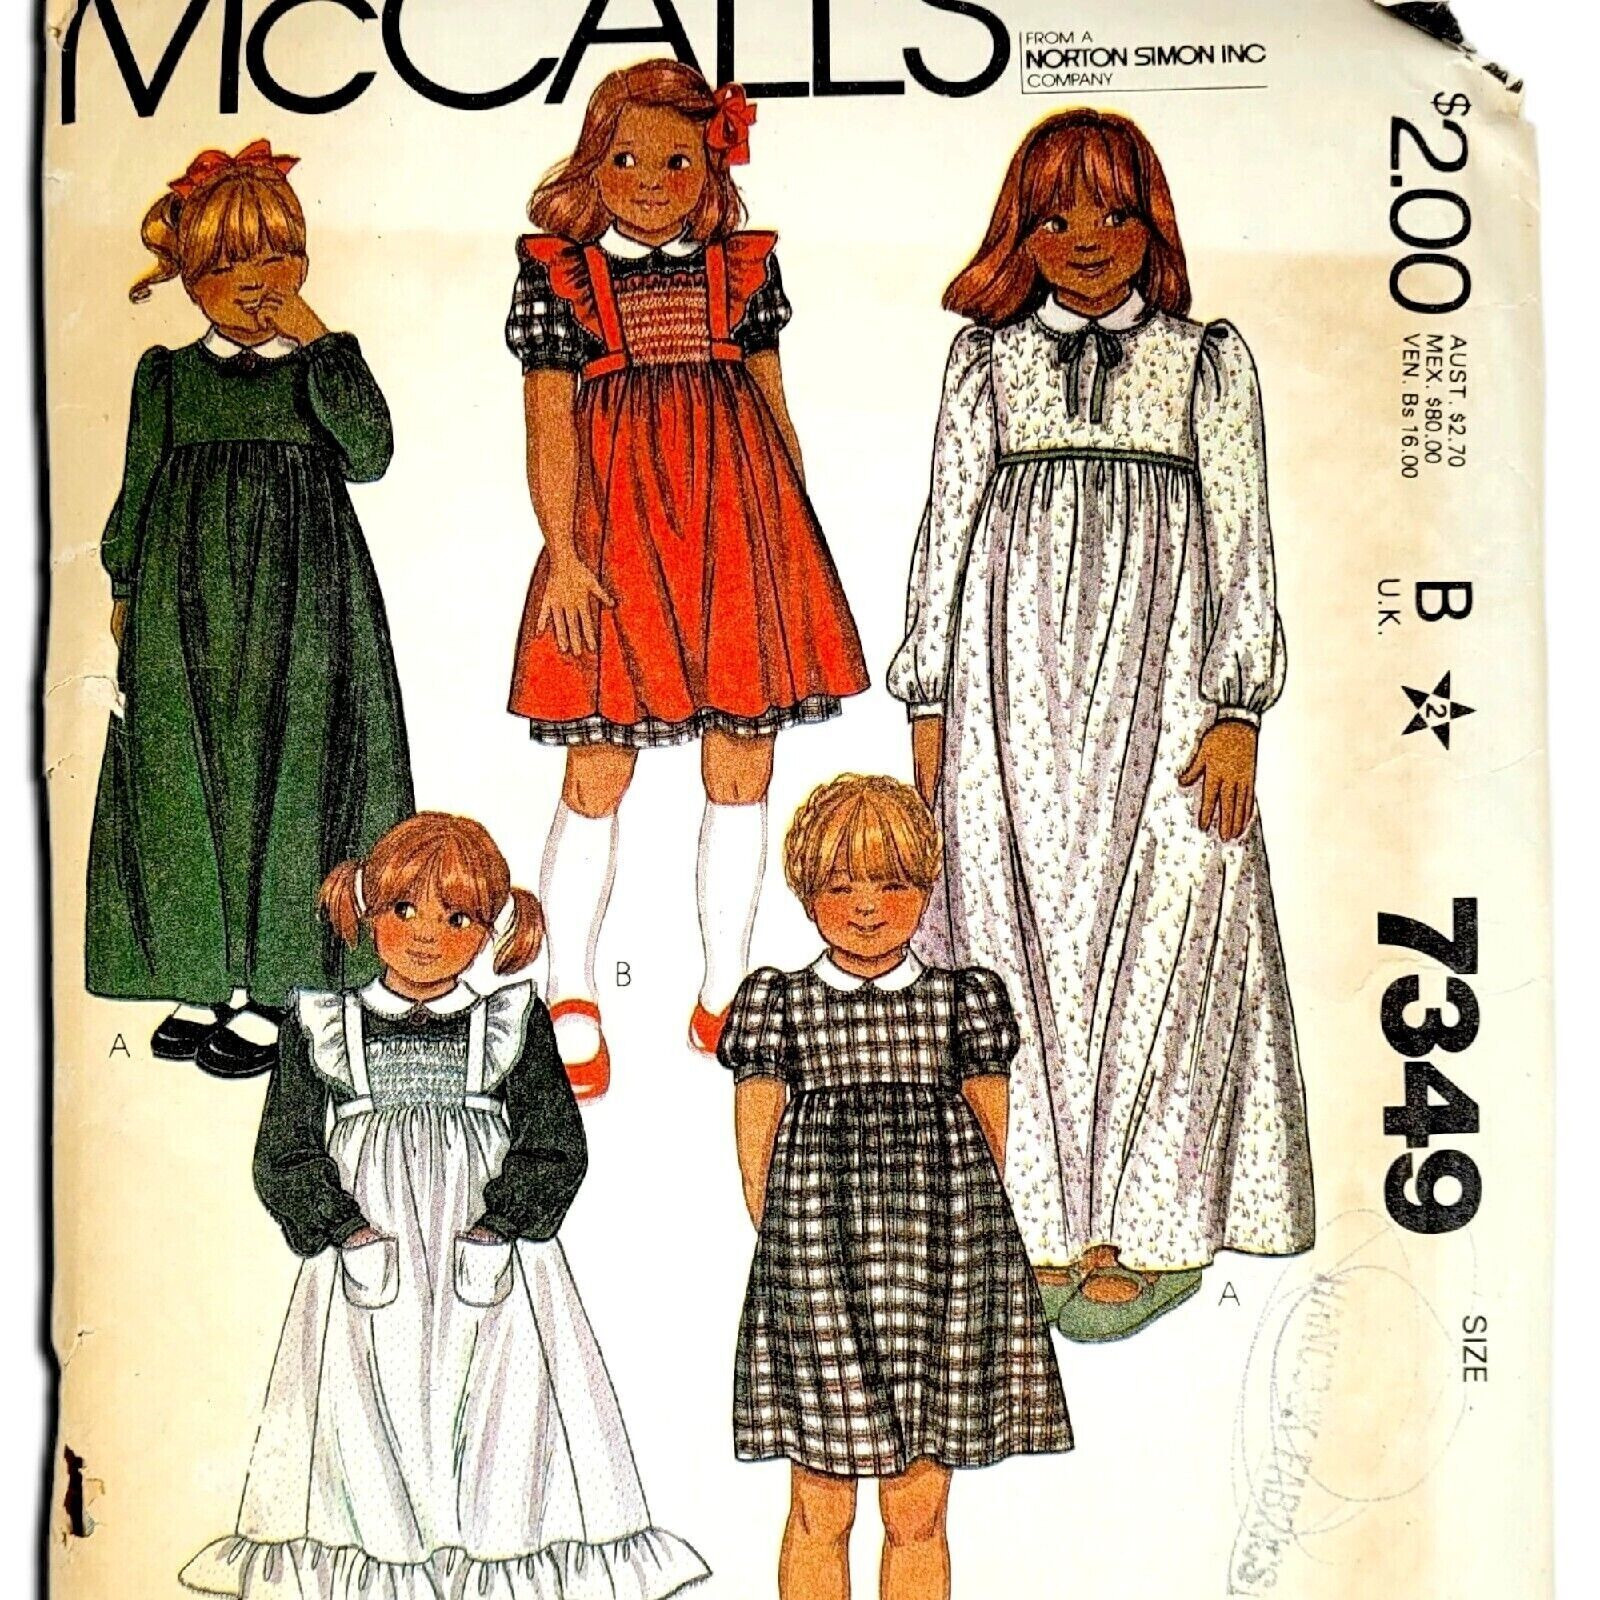 McCalls 1980s Sewing Pattern 7349 Girls Size 4 Dress Pinafore Smocking Vintage